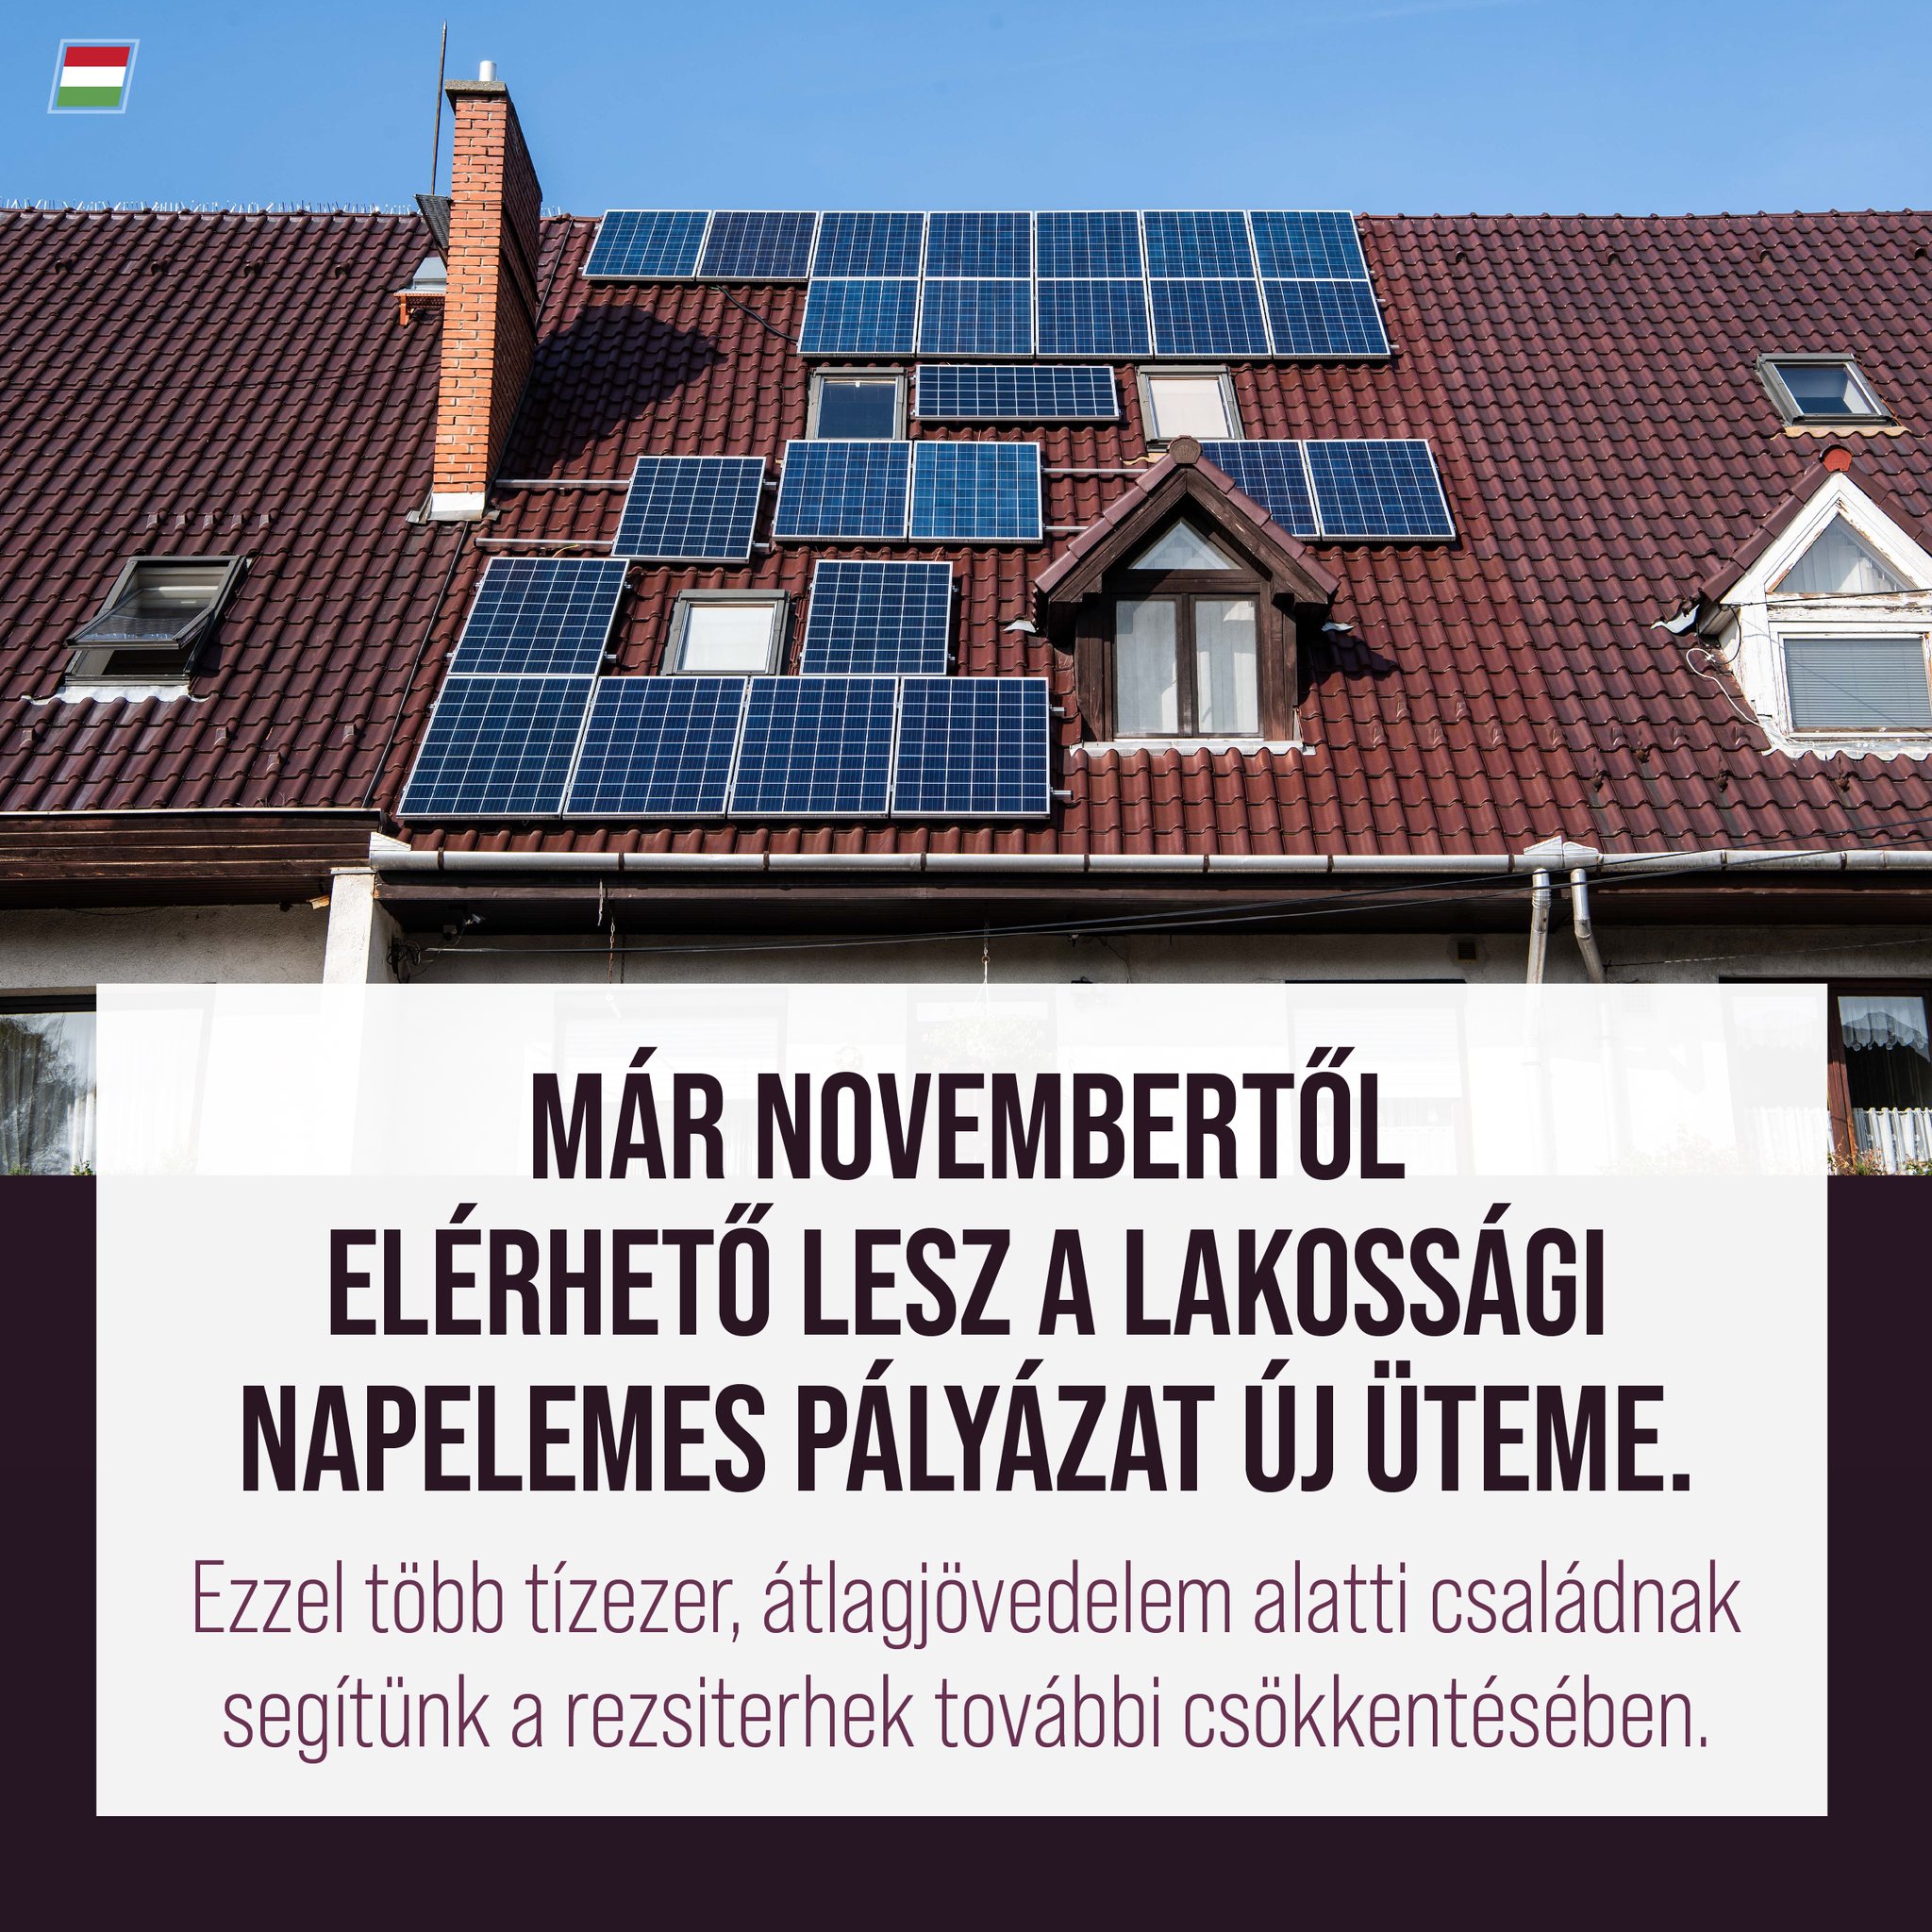 Novembertől újra lehet pályázni napelem telepítésére. A cél, hogy újabb lehetőséggel segítsük a családokat a rezsiköltségek csökkentésében. Bővebb információ a napelemes pályázatról: https://napelem.palyazat.gov.hu